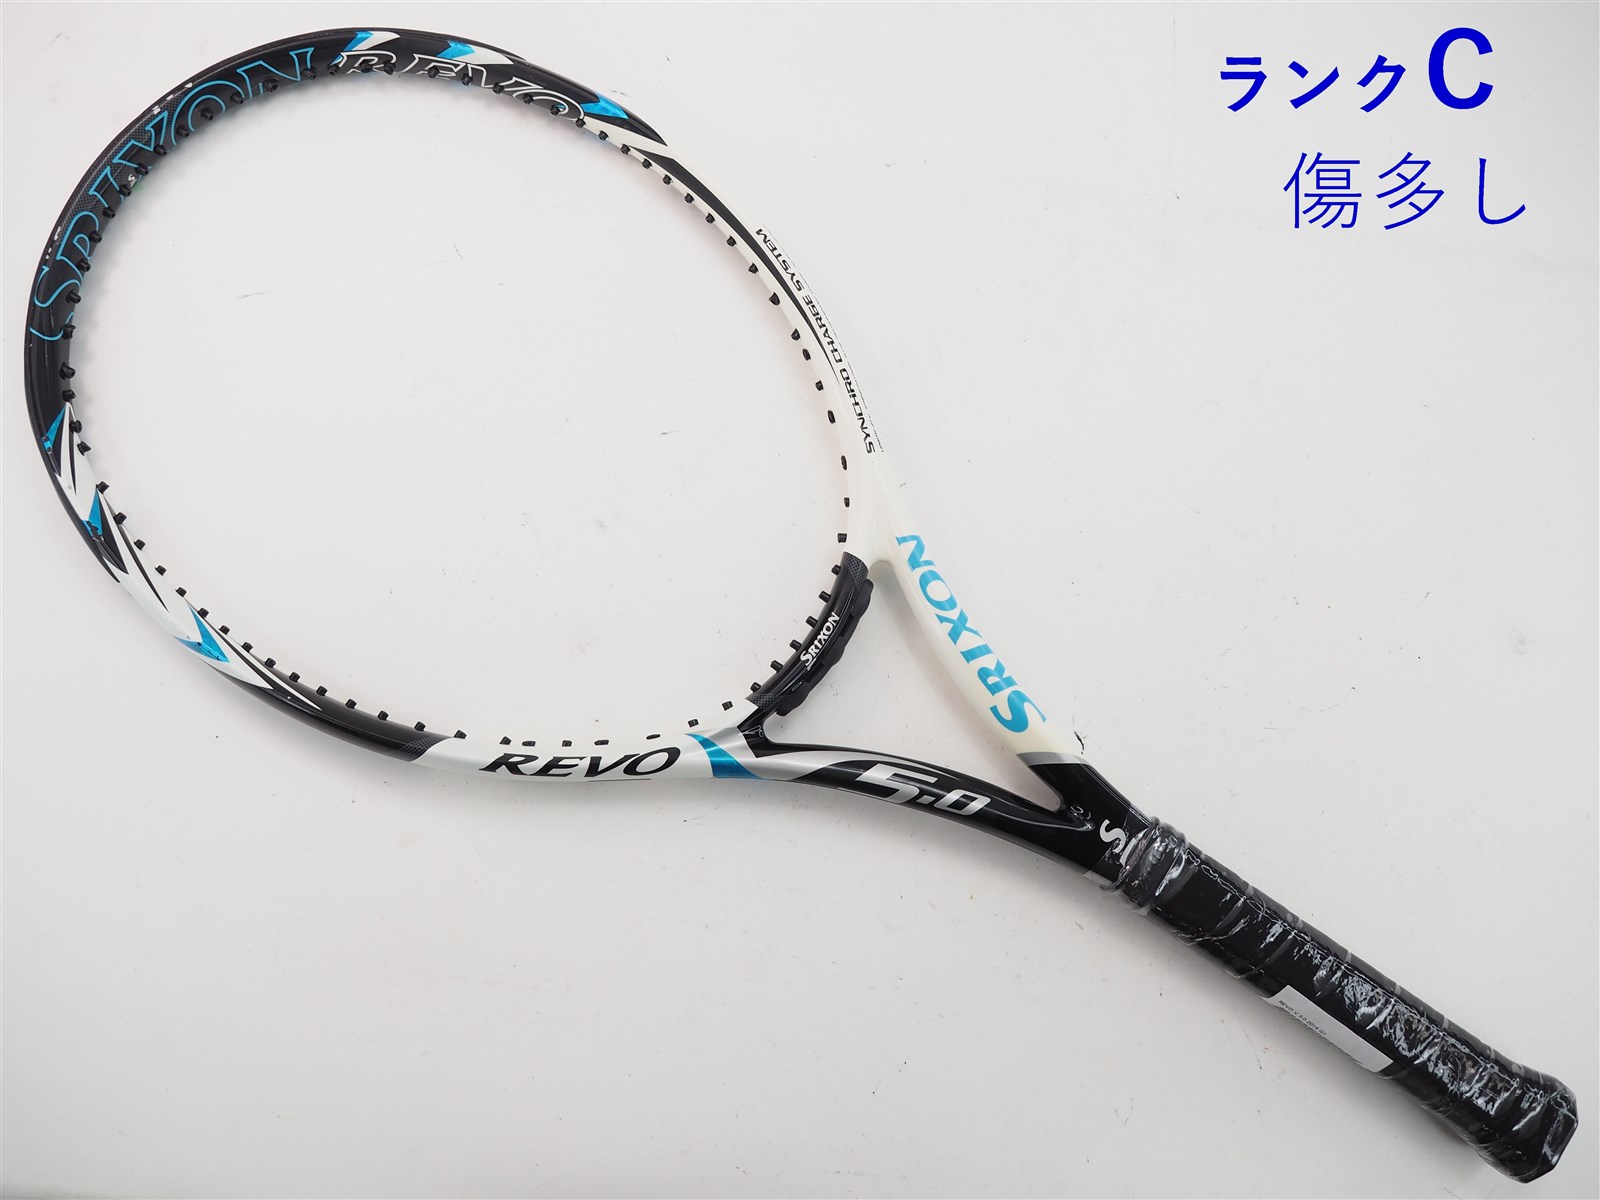 テニスラケット スリクソン レヴォ ブイ 5.0 2012年モデル【一部グロメット割れ有り】 (G3)SRIXON REVO V 5.0 2012